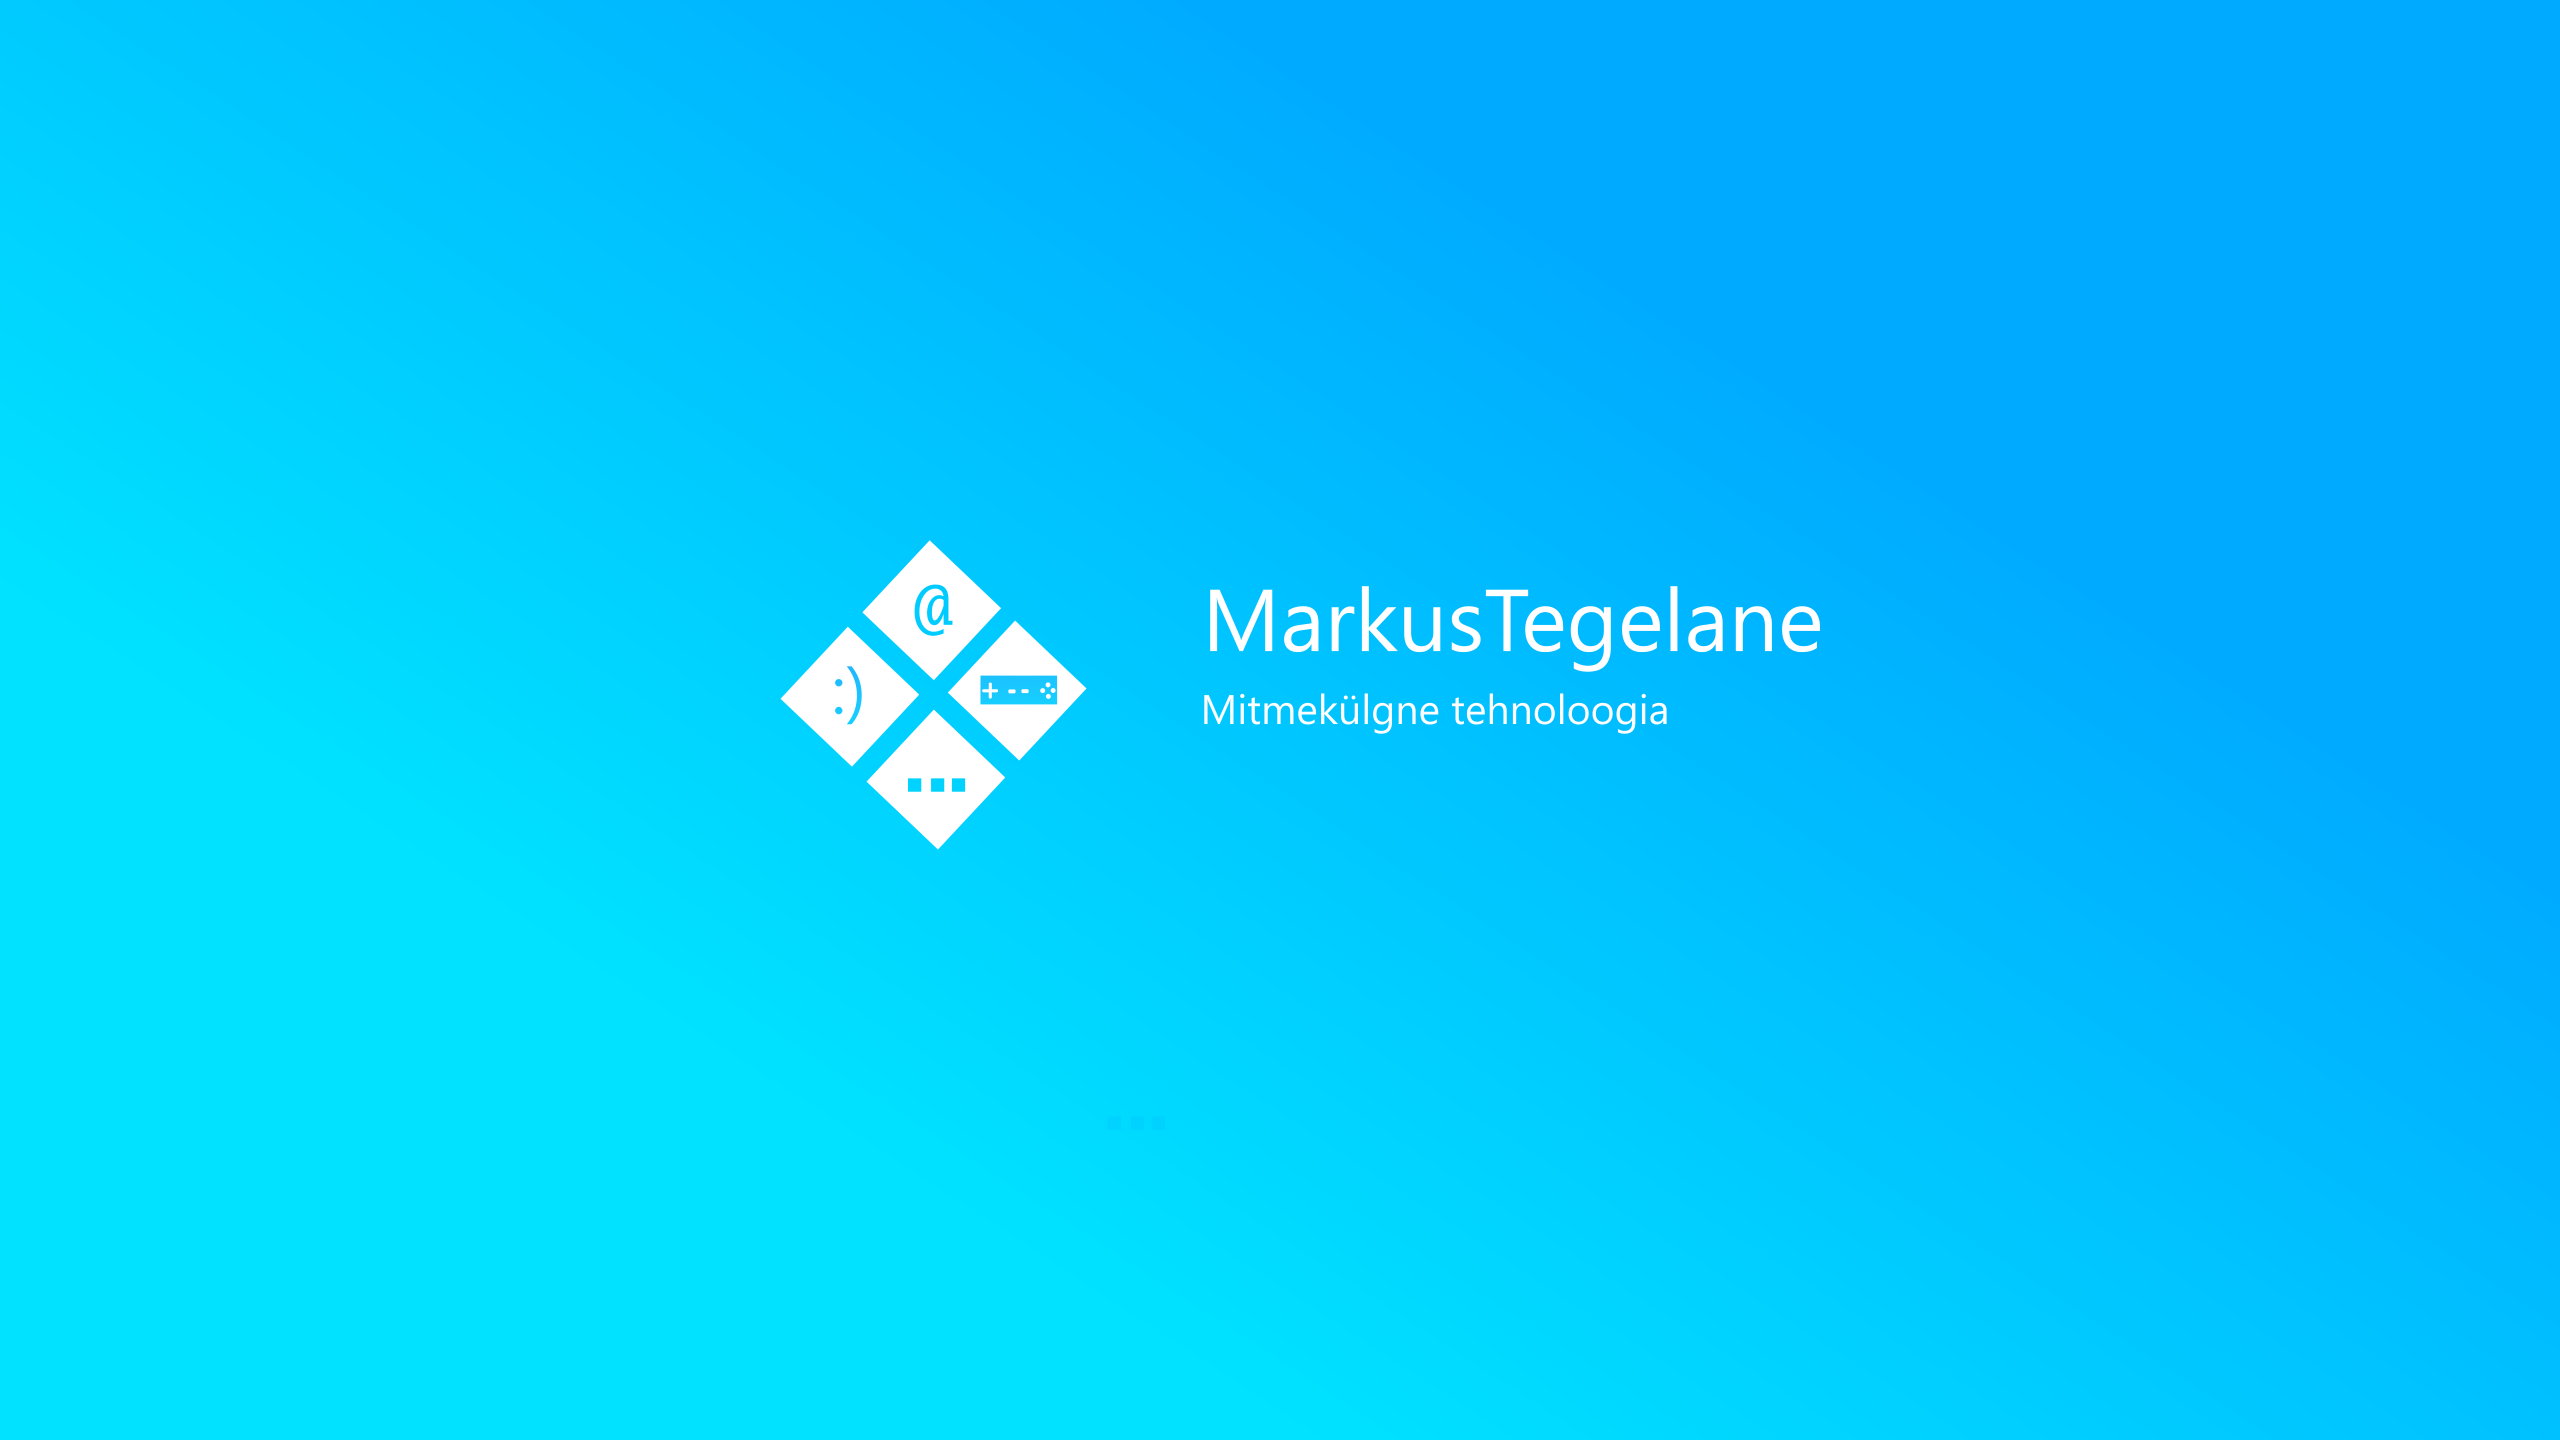 images/dloads/MarkusTegelane_element_cover.png